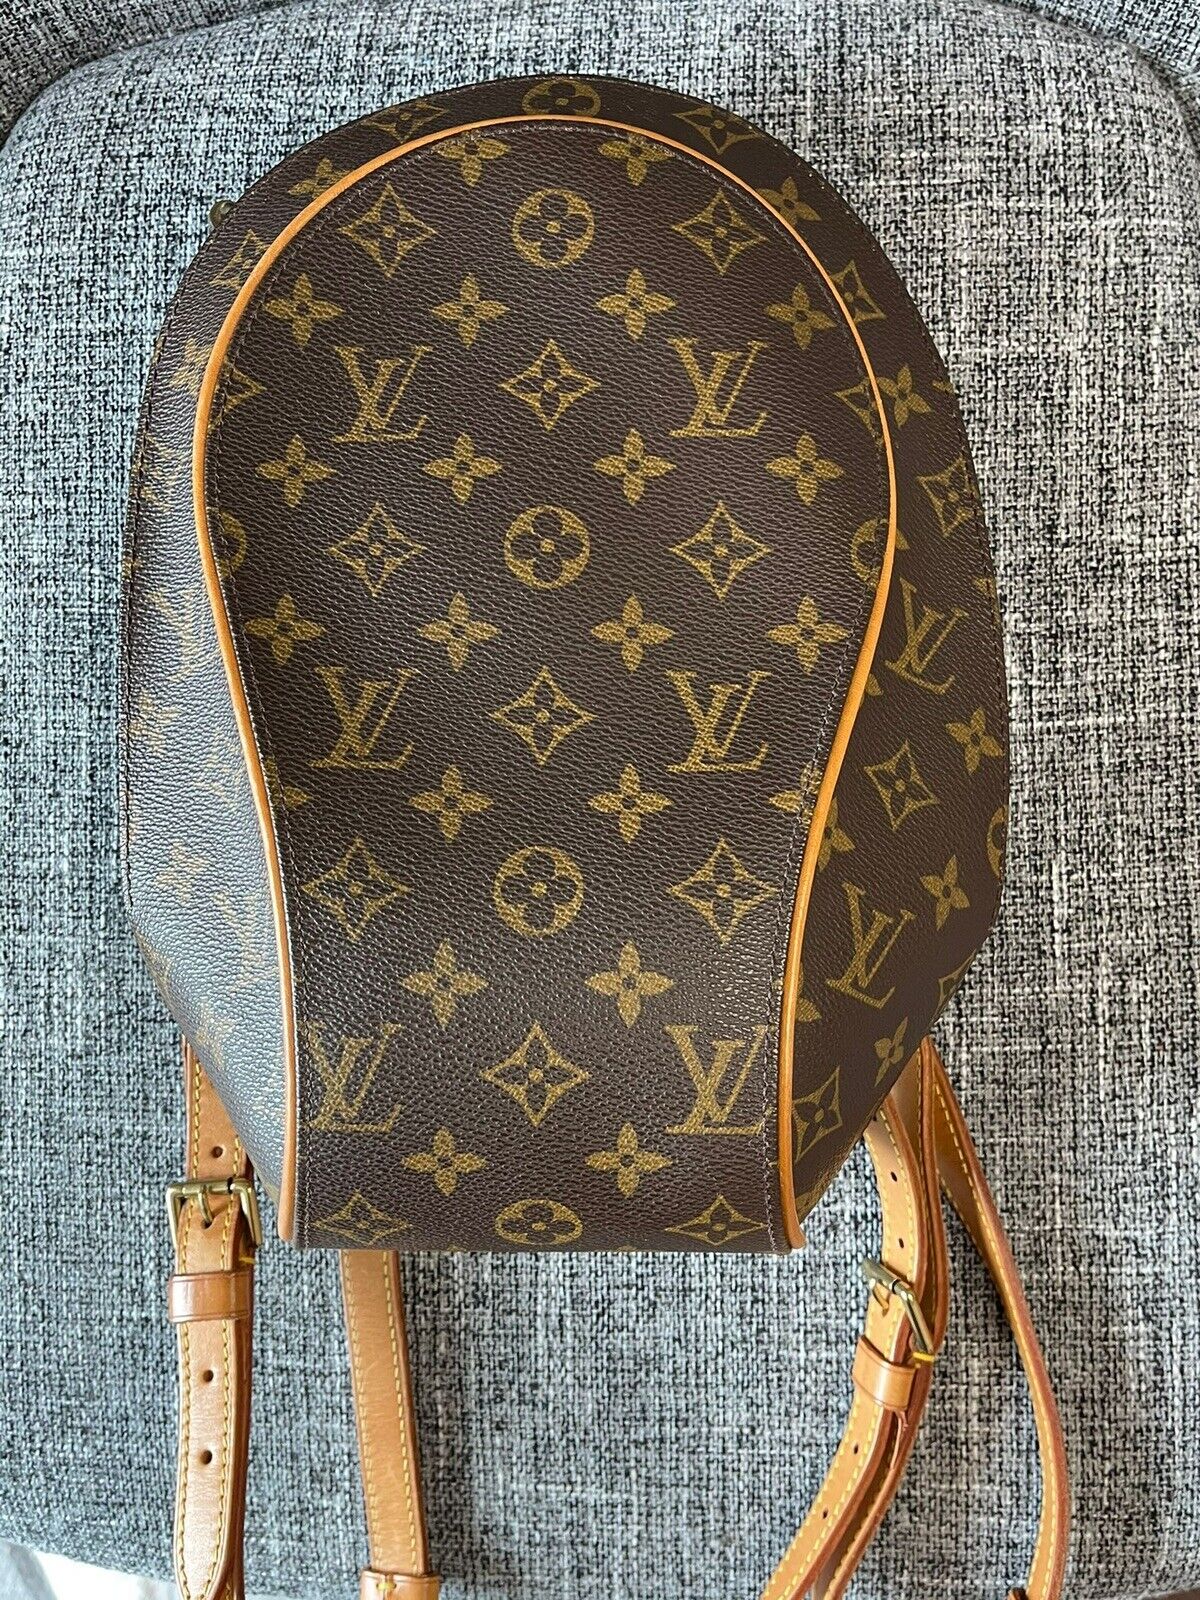 Louis Vuitton, Bags, Authentic Louis Vuitton Monogram Ellipse Backpack